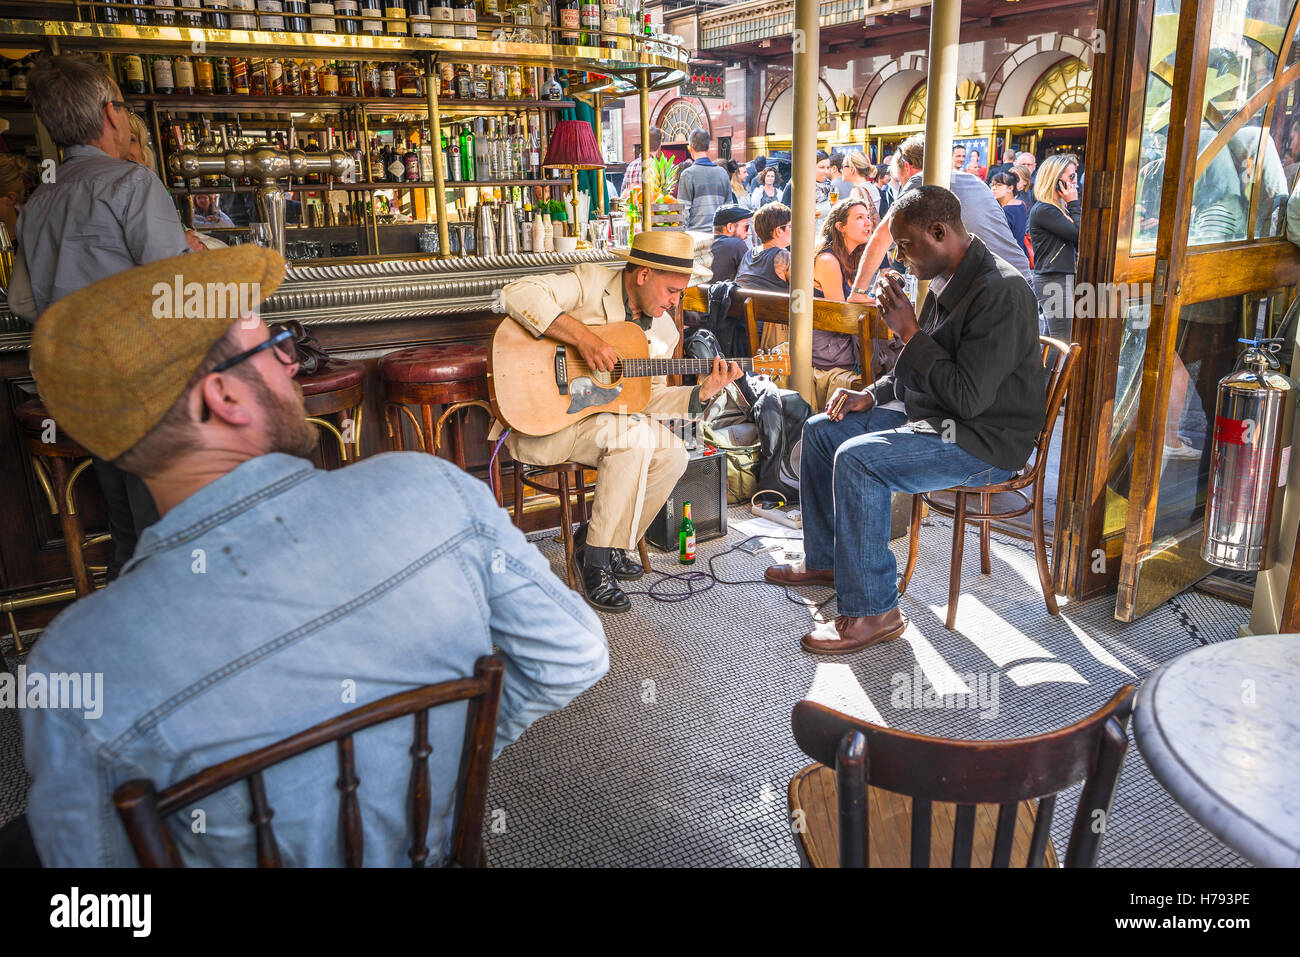 Soho London bar Cafe été, vue d'une paire de musiciens de blues se présentant à l'intérieur du Cafe Boheme dans Old Compton Street, Soho, Londres, Angleterre, Royaume-Uni. Banque D'Images